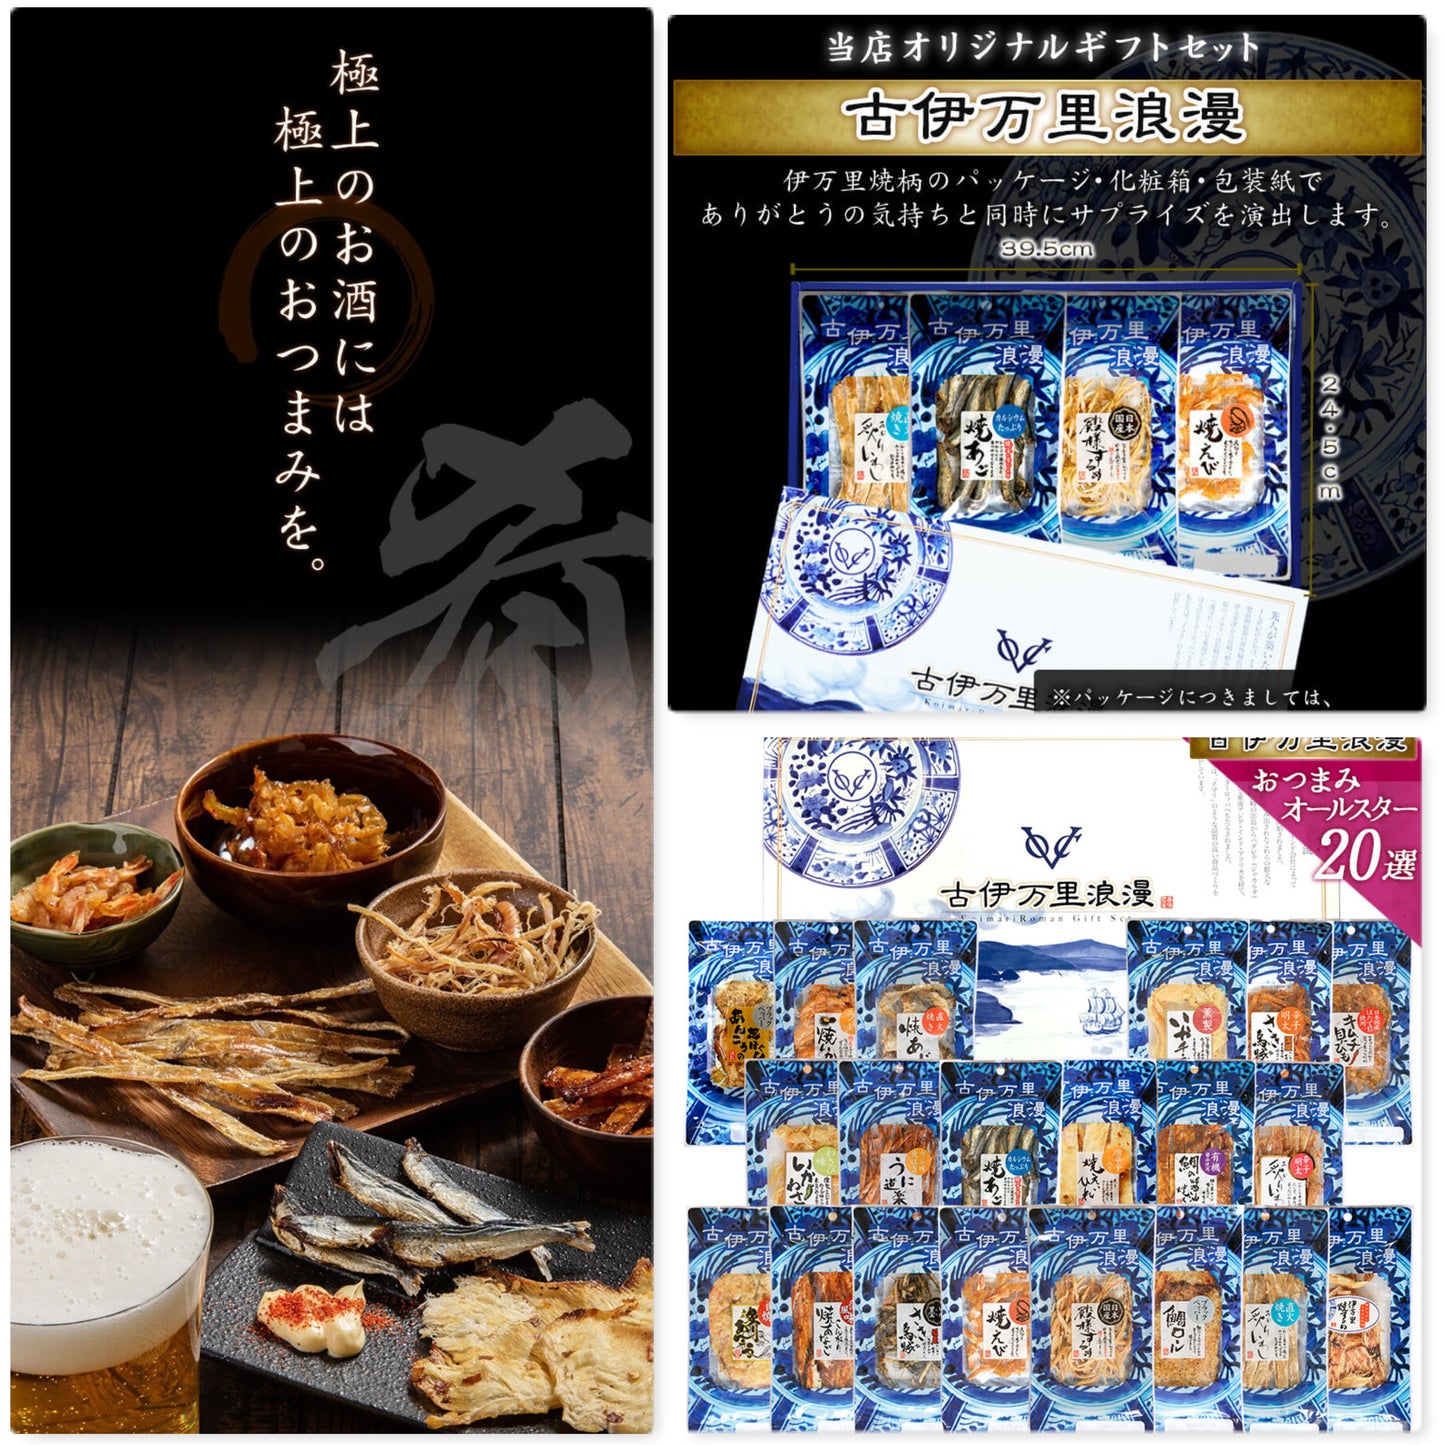 koimari roman, japanese seafood snacks, japanese premium seafood snacks, koimari roman japanese seafood 